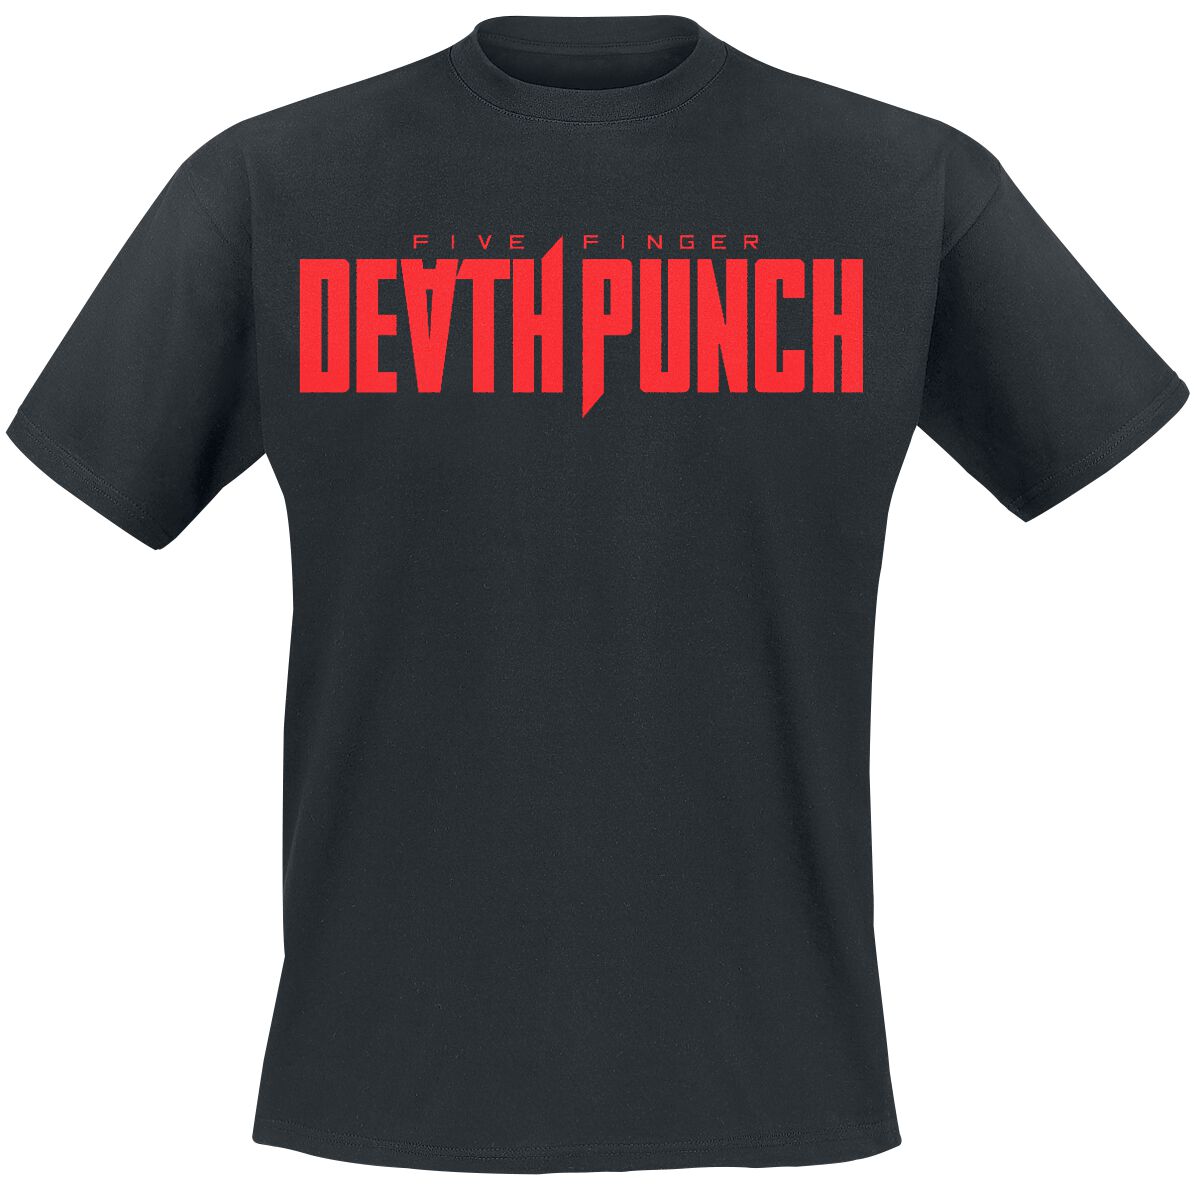 Five Finger Death Punch T-Shirt - Afterlife Kanji - S bis 3XL - für Männer - Größe M - schwarz  - Lizenziertes Merchandise!